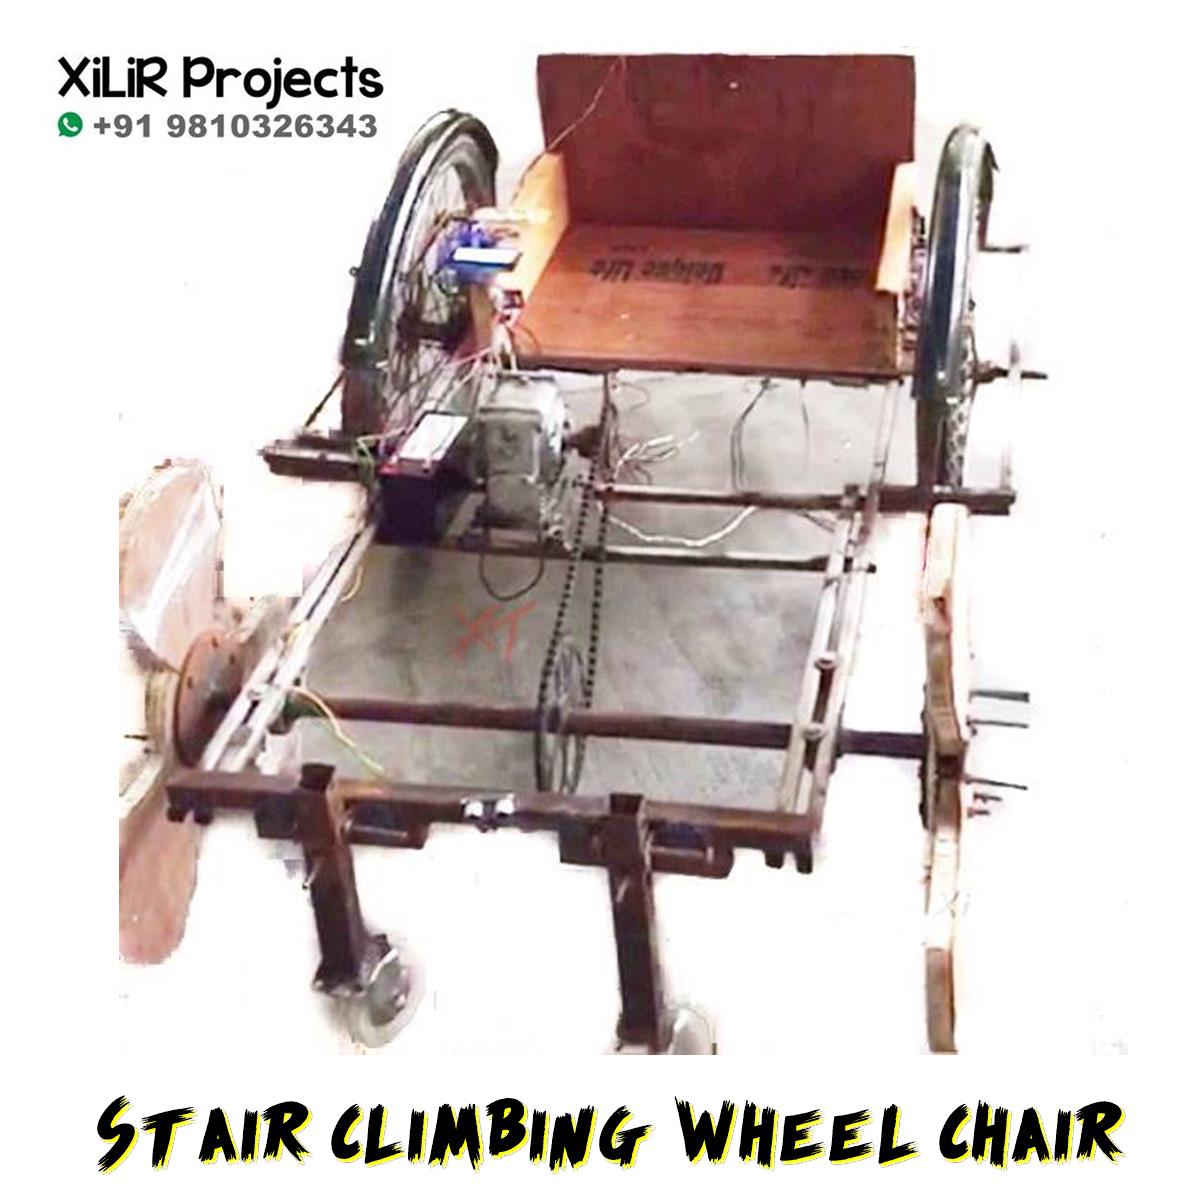 Stair-Climbing-Advanced-Wheel-Chair.jpg